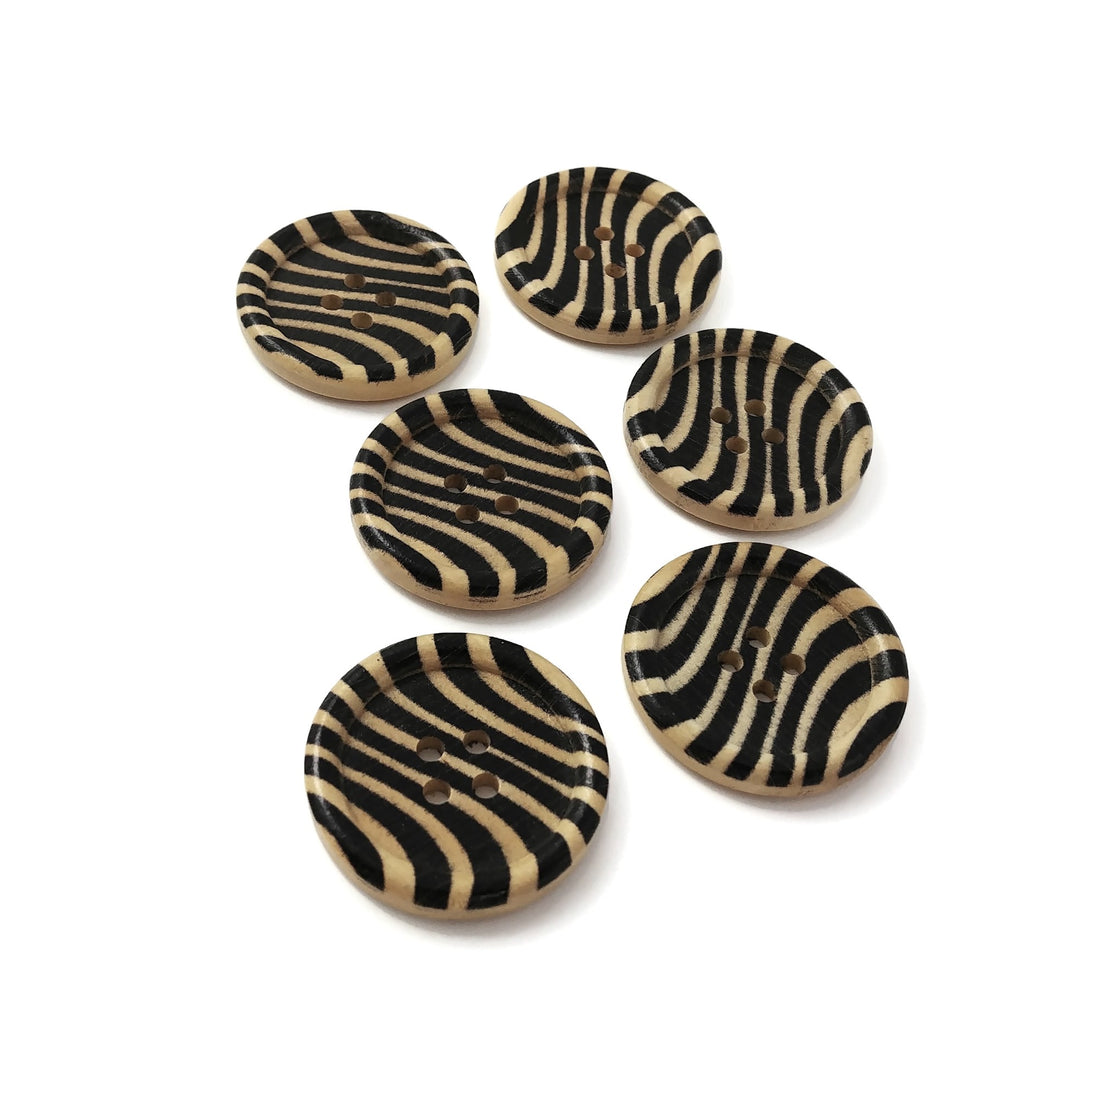 Bouton de bois avec motif zèbre de 3cm - ensemble de 6 boutons boutons noir et bois naturel